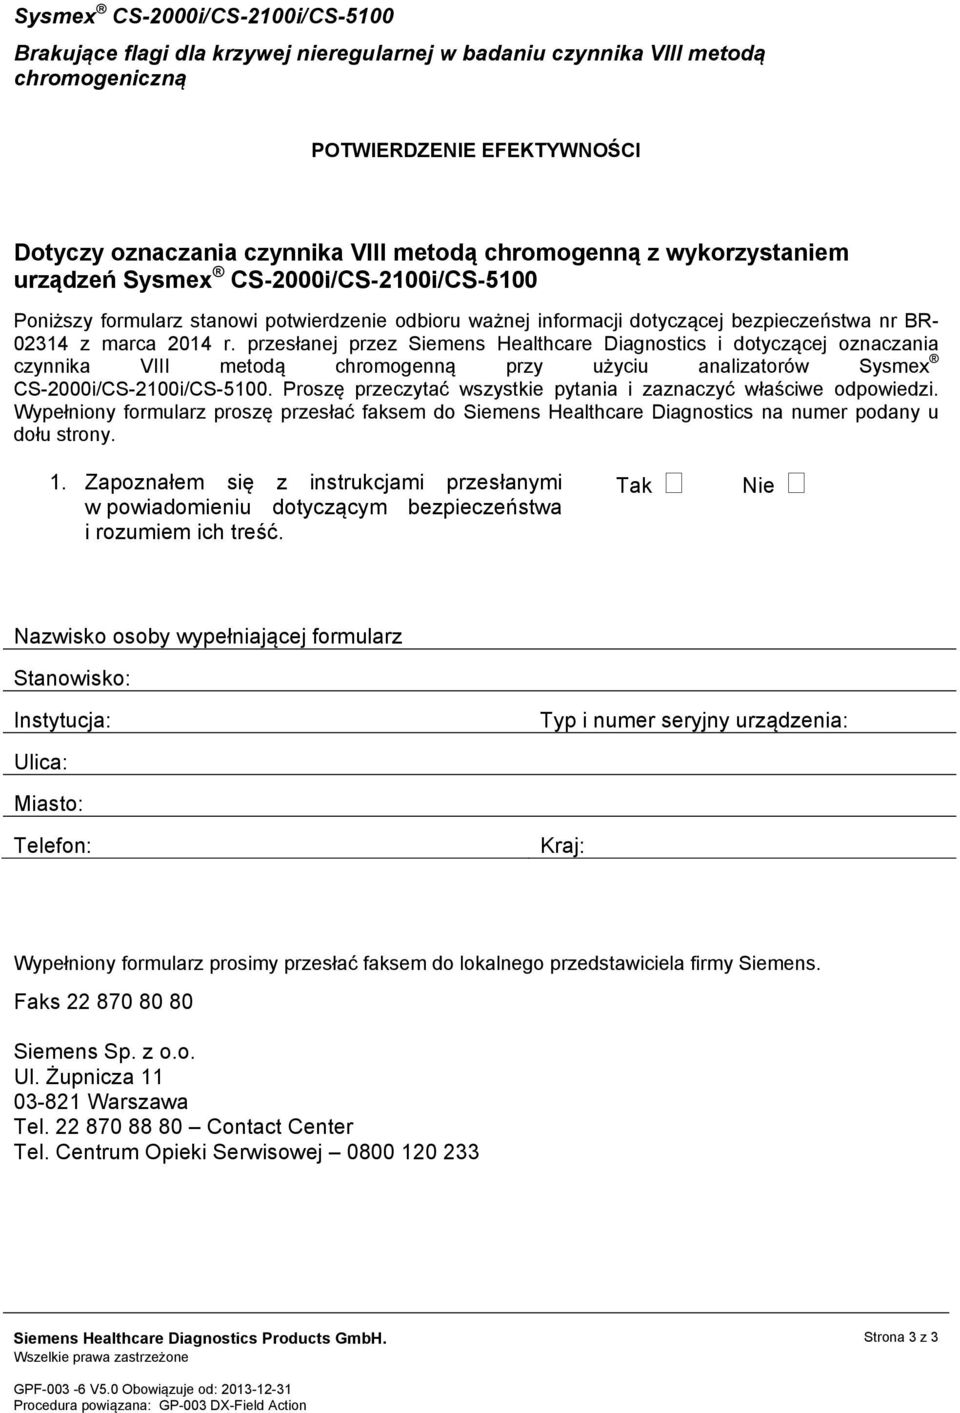 przesłanej przez Siemens Healthcare Diagnostics i dotyczącej oznaczania czynnika VIII metodą chromogenną przy użyciu analizatorów Sysmex CS-2000i/CS-2100i/CS-5100.